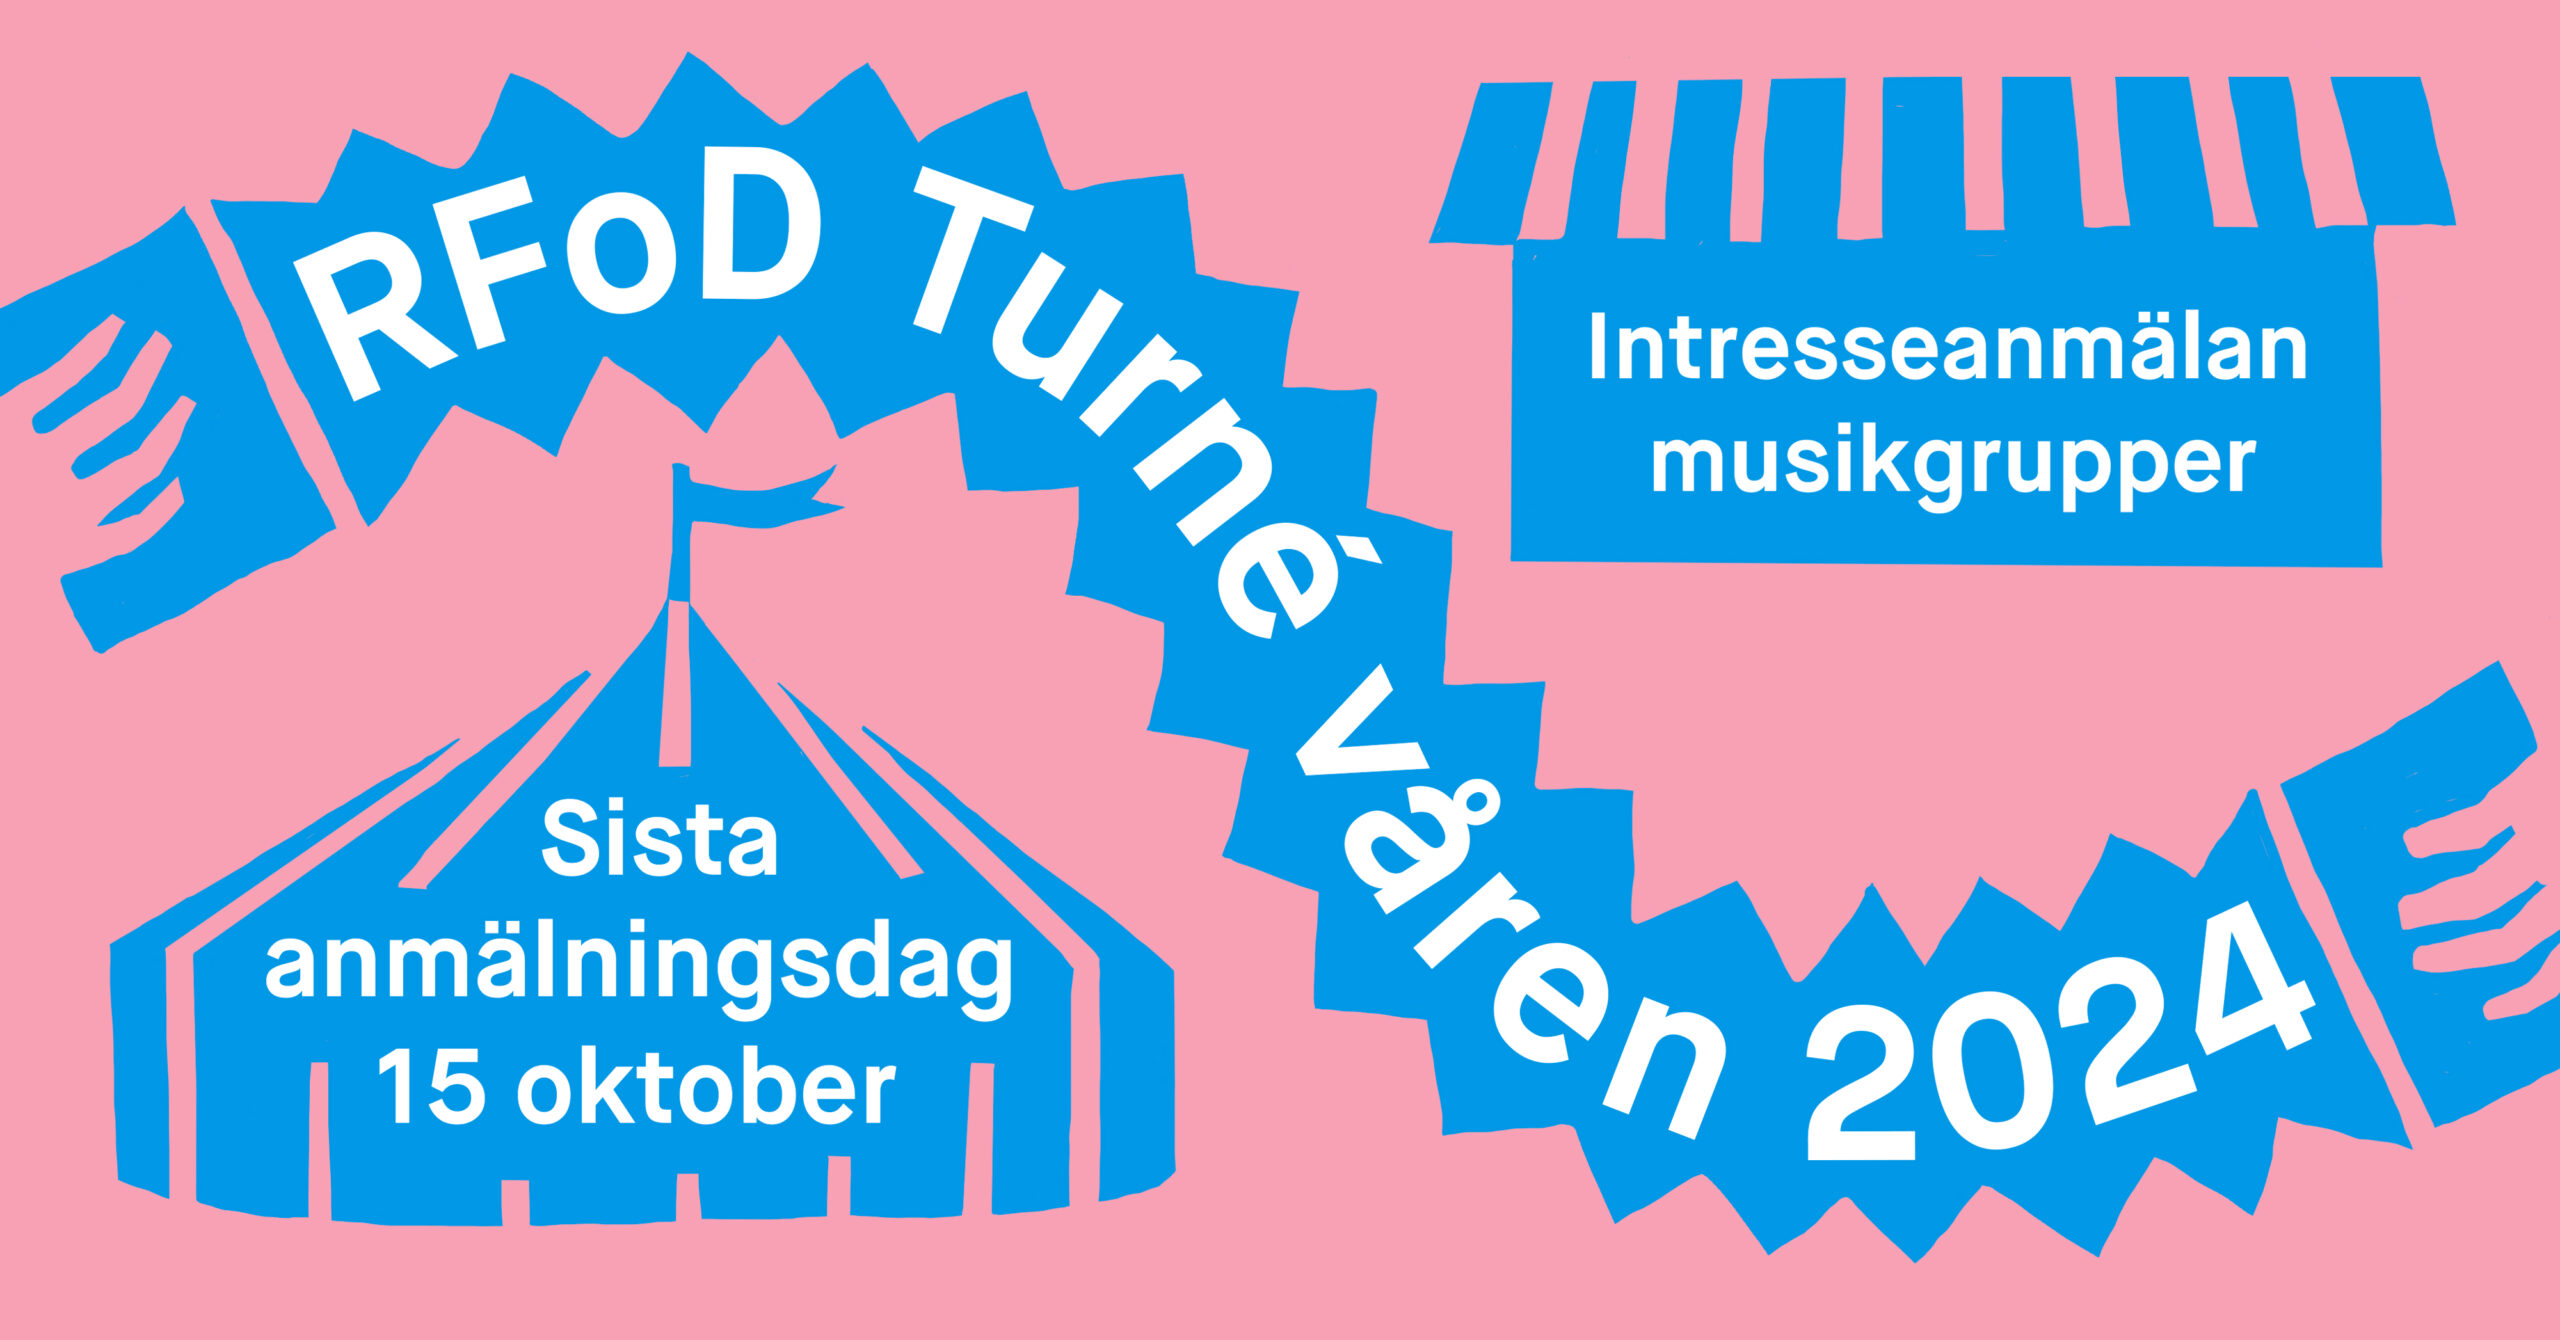 Musikgrupper, intresseanmäl er för RFoD Turné våren 2024!